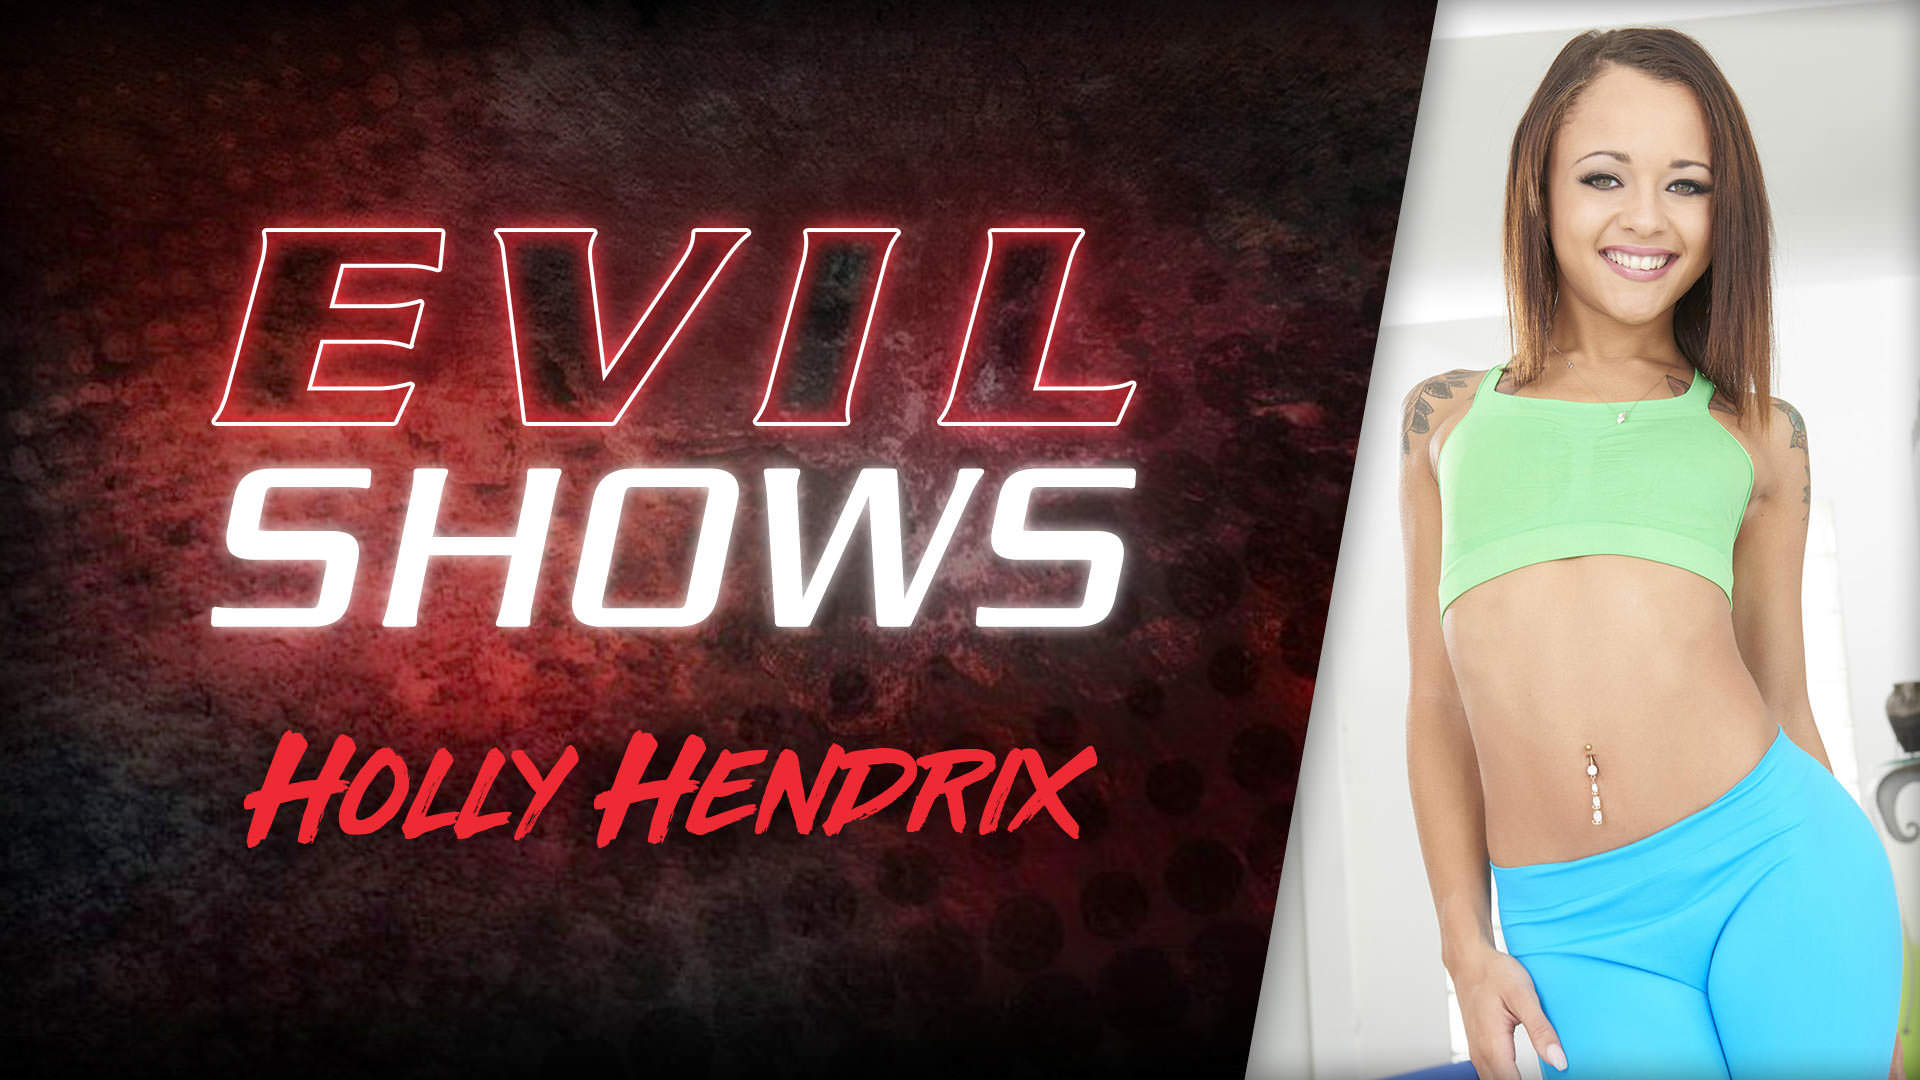 Evil shows holly hendrix holly hendrix Naughty Holly